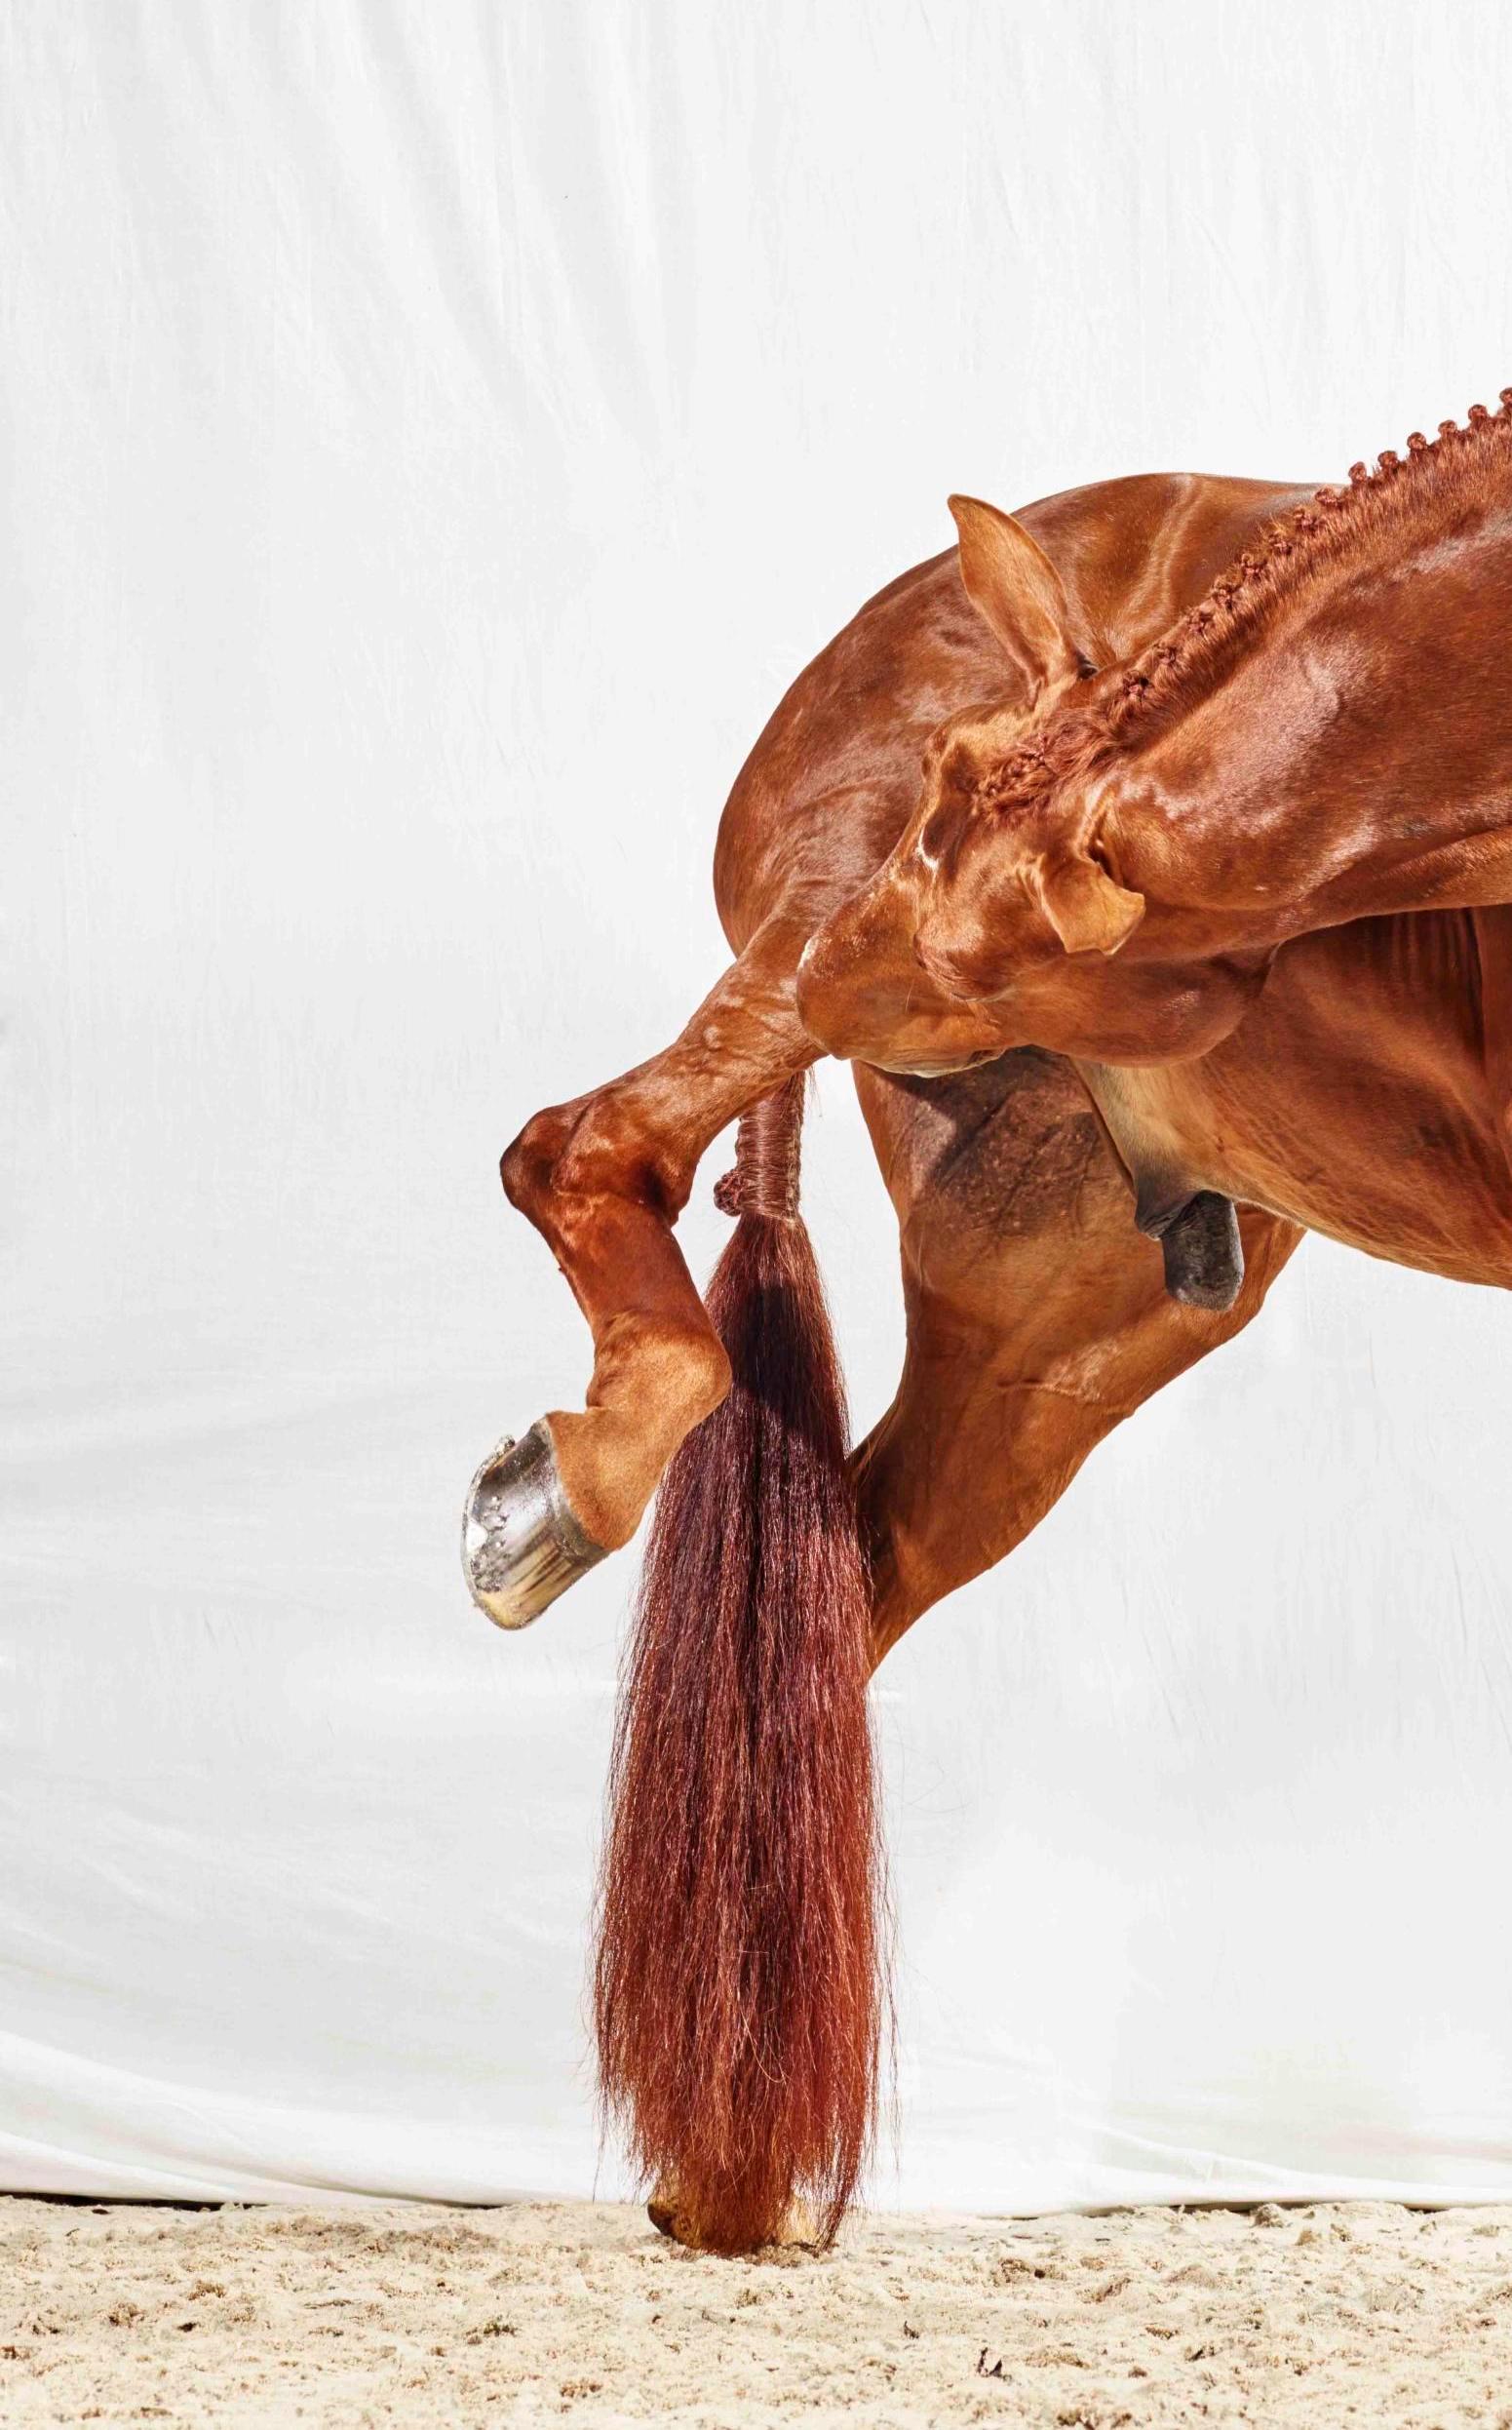 Raymond hat ein Jucken, 2016 von Juan Lamarca
Hochwertiges archivfestes Baumwollpapier
Bildgröße: 40 x 30 Zoll
Ausgabe 2 von 10 plus 2 AP
Ungerahmt

Die Horse Series von Juan Lamarca ist eine abstrakte Sammlung von Fotografien, die